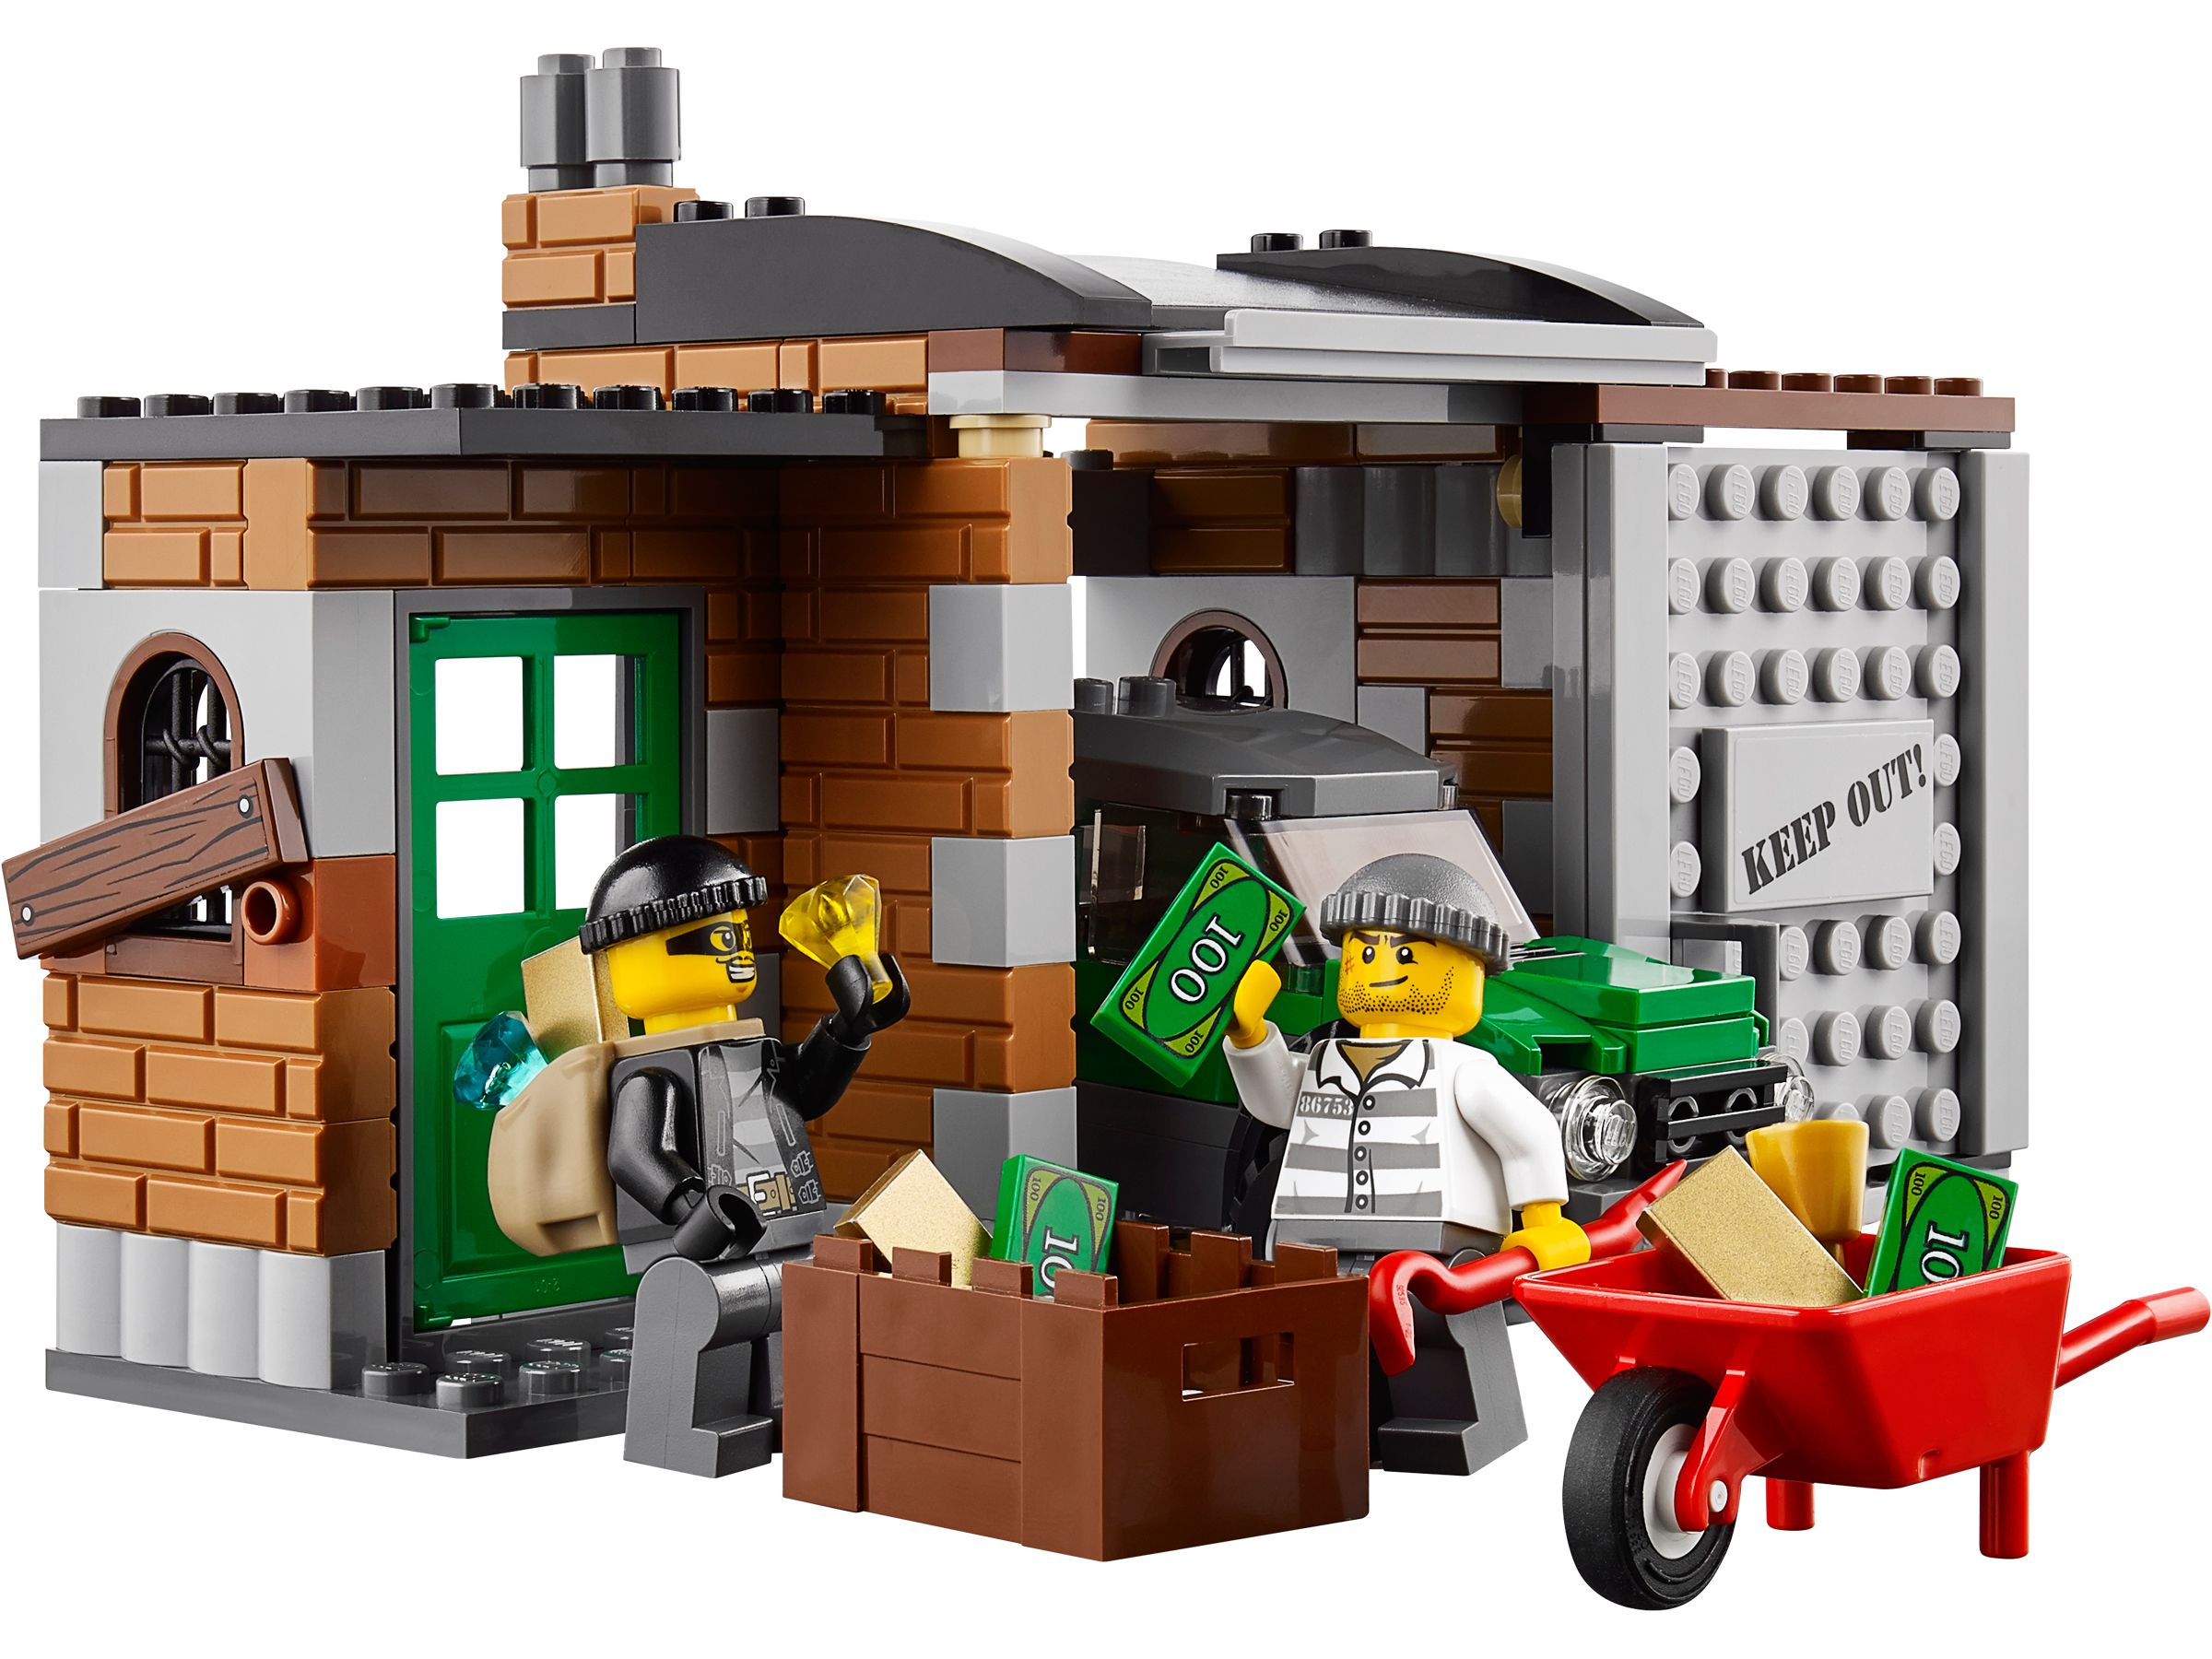 LEGO City 60046 Verfolgung mit dem Polizei-Hubschrauber LEGO_60046_alt2.jpg